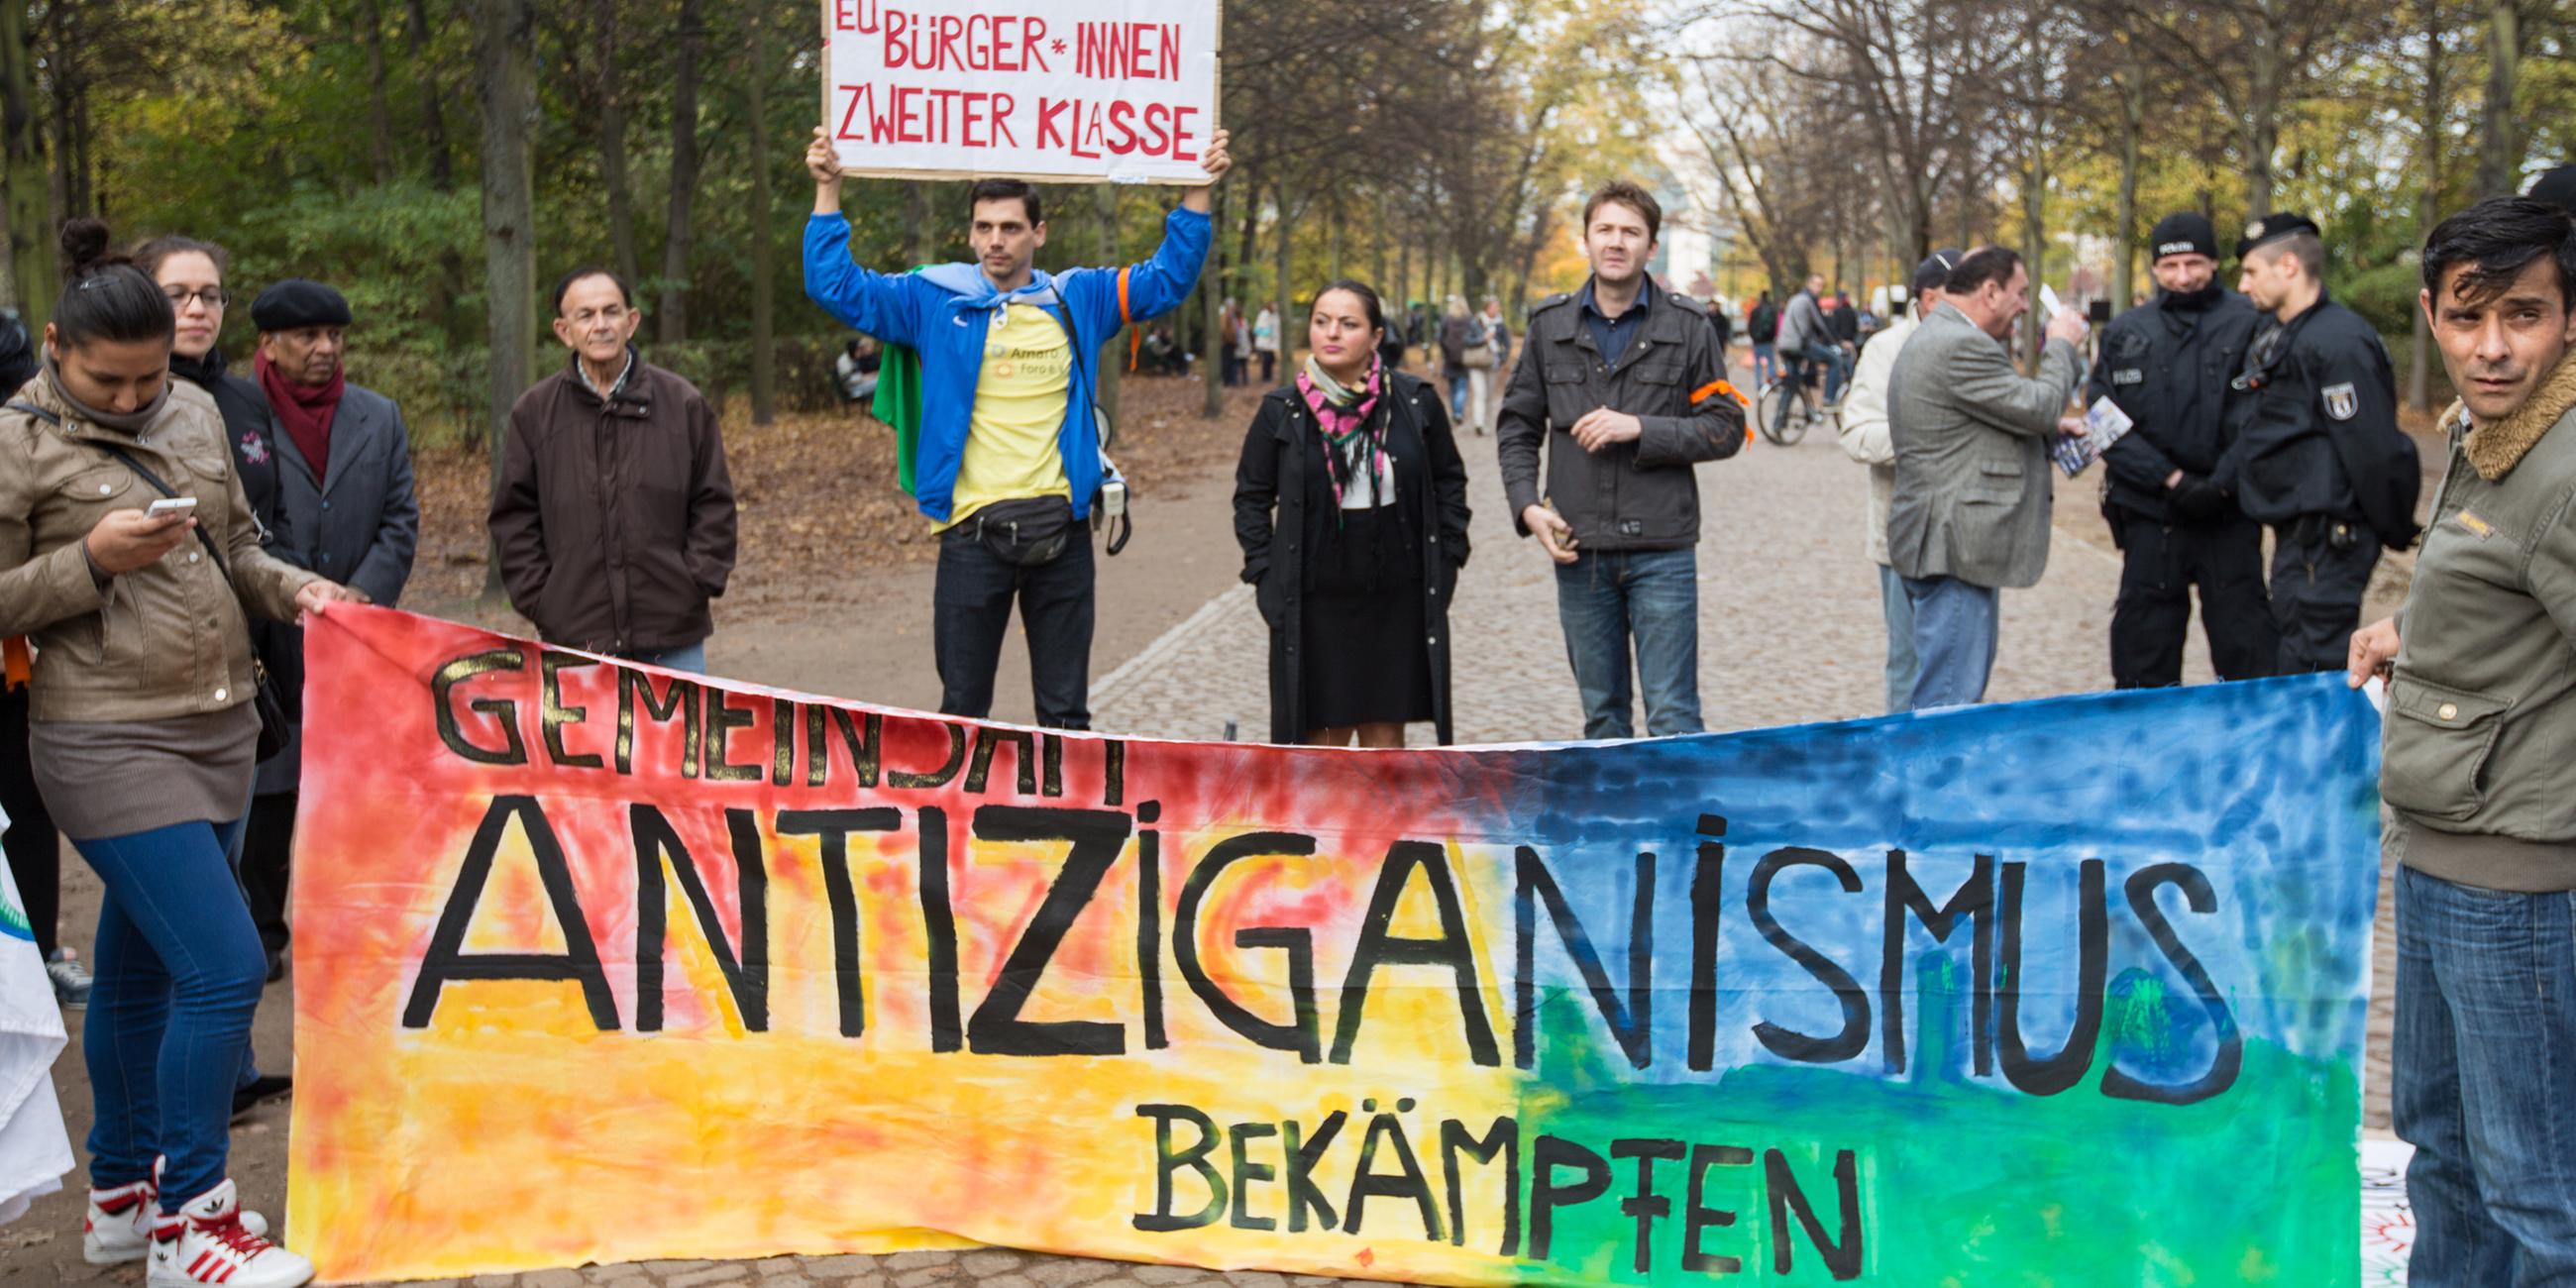 Archiv: Protest gegen Antiziganismus in Berlin